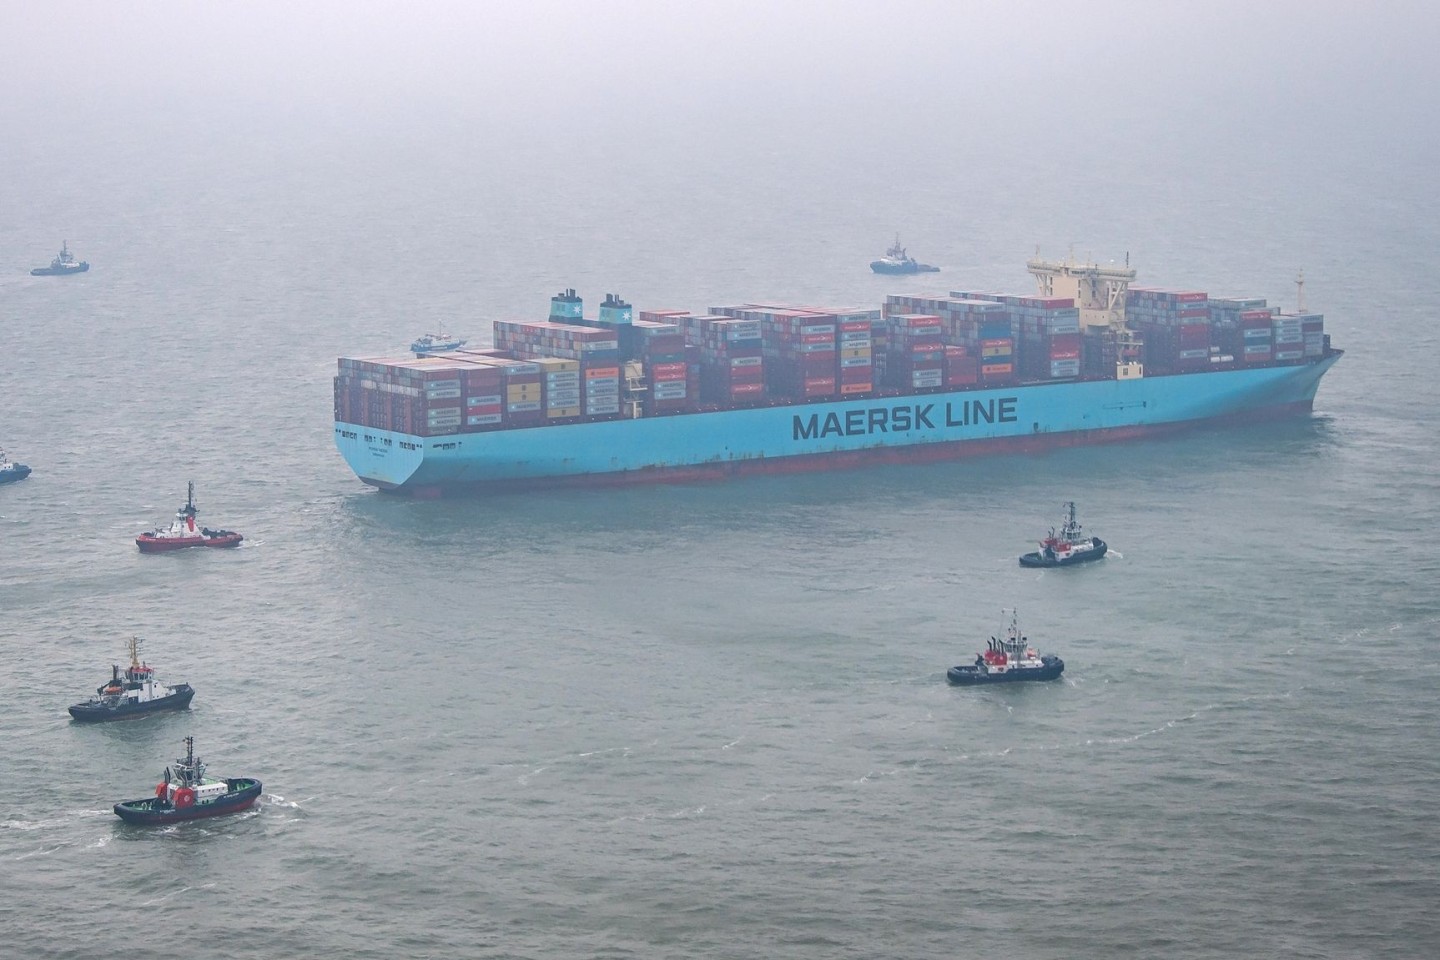 Das 400 Meter lange Containerschiff hatte sich nördlich der ostfriesischen Insel Wangerooge festgefahren.